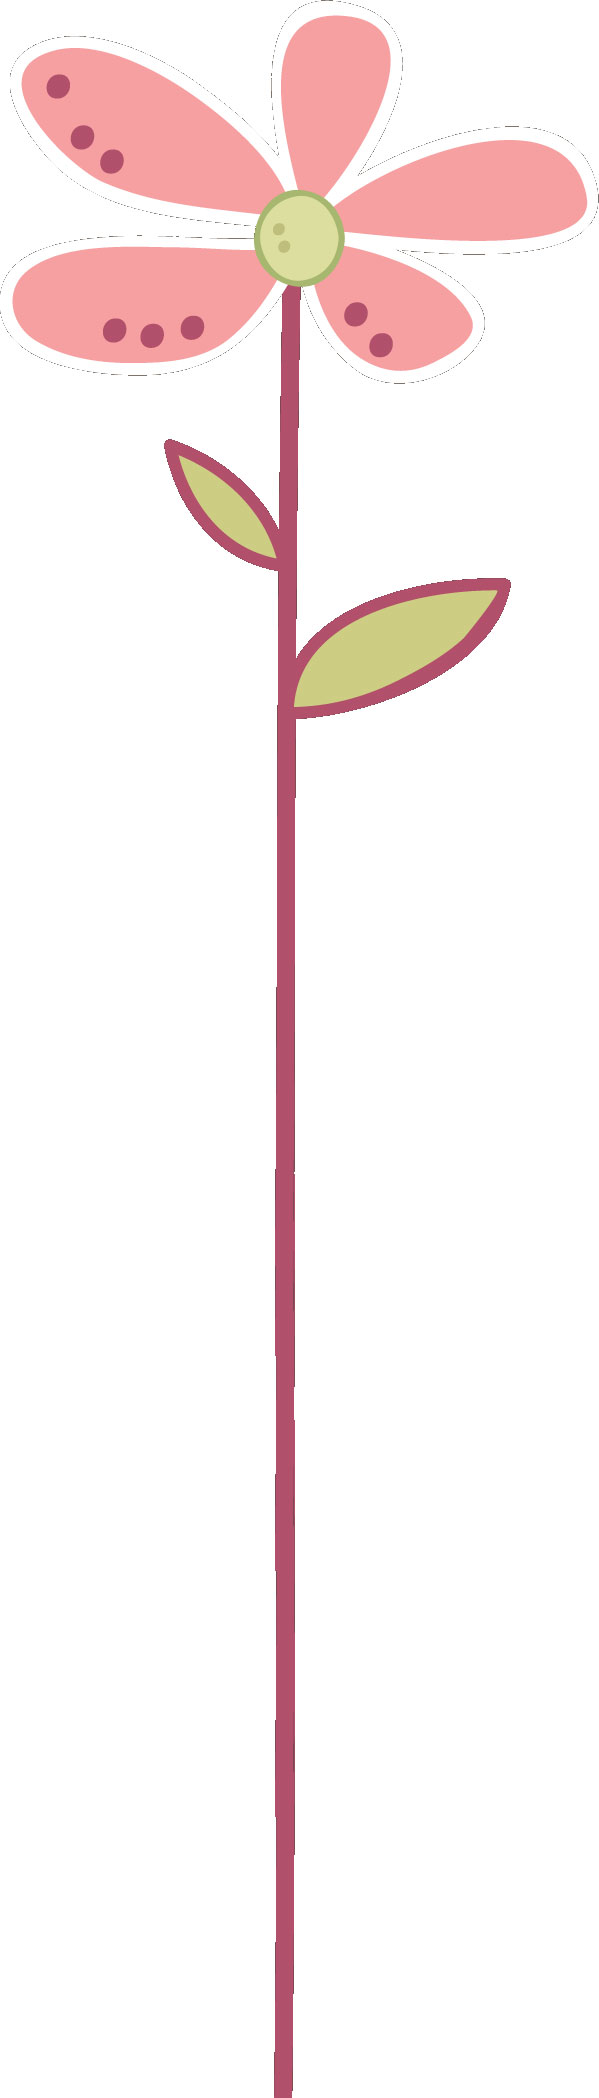 花のライン線イラスト-ピンク・5枚葉